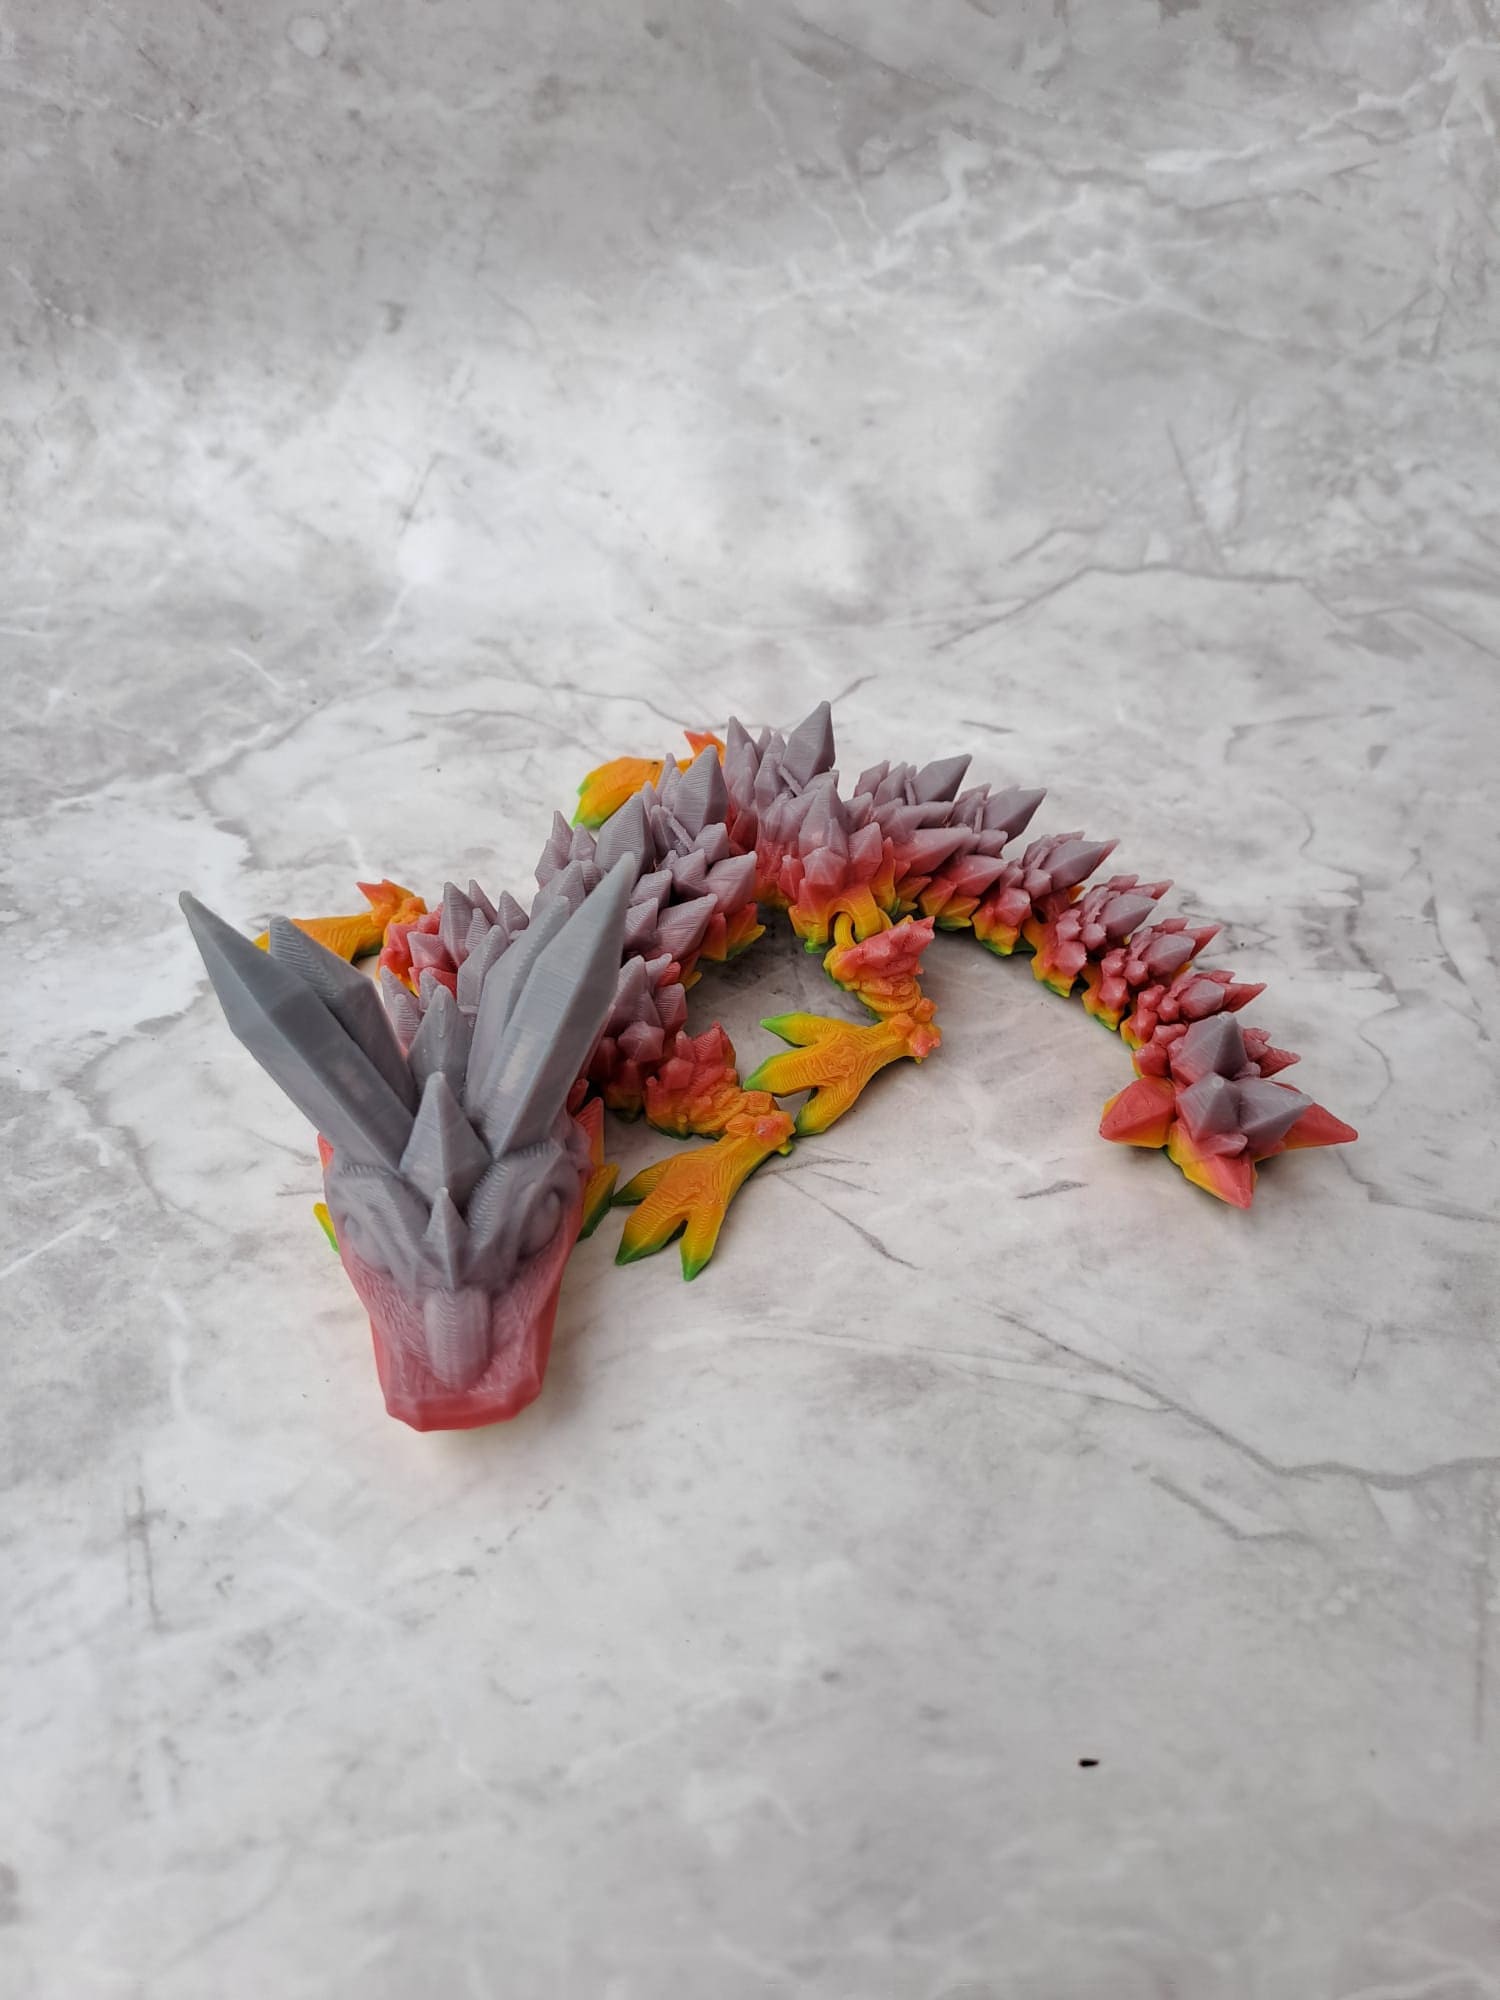 Regenbogen Baby Drache beweglich Edelstein Kristall Drache 3D gedruckt - articulated Dragon - Schreibtischspielzeug - leuchtende Farben